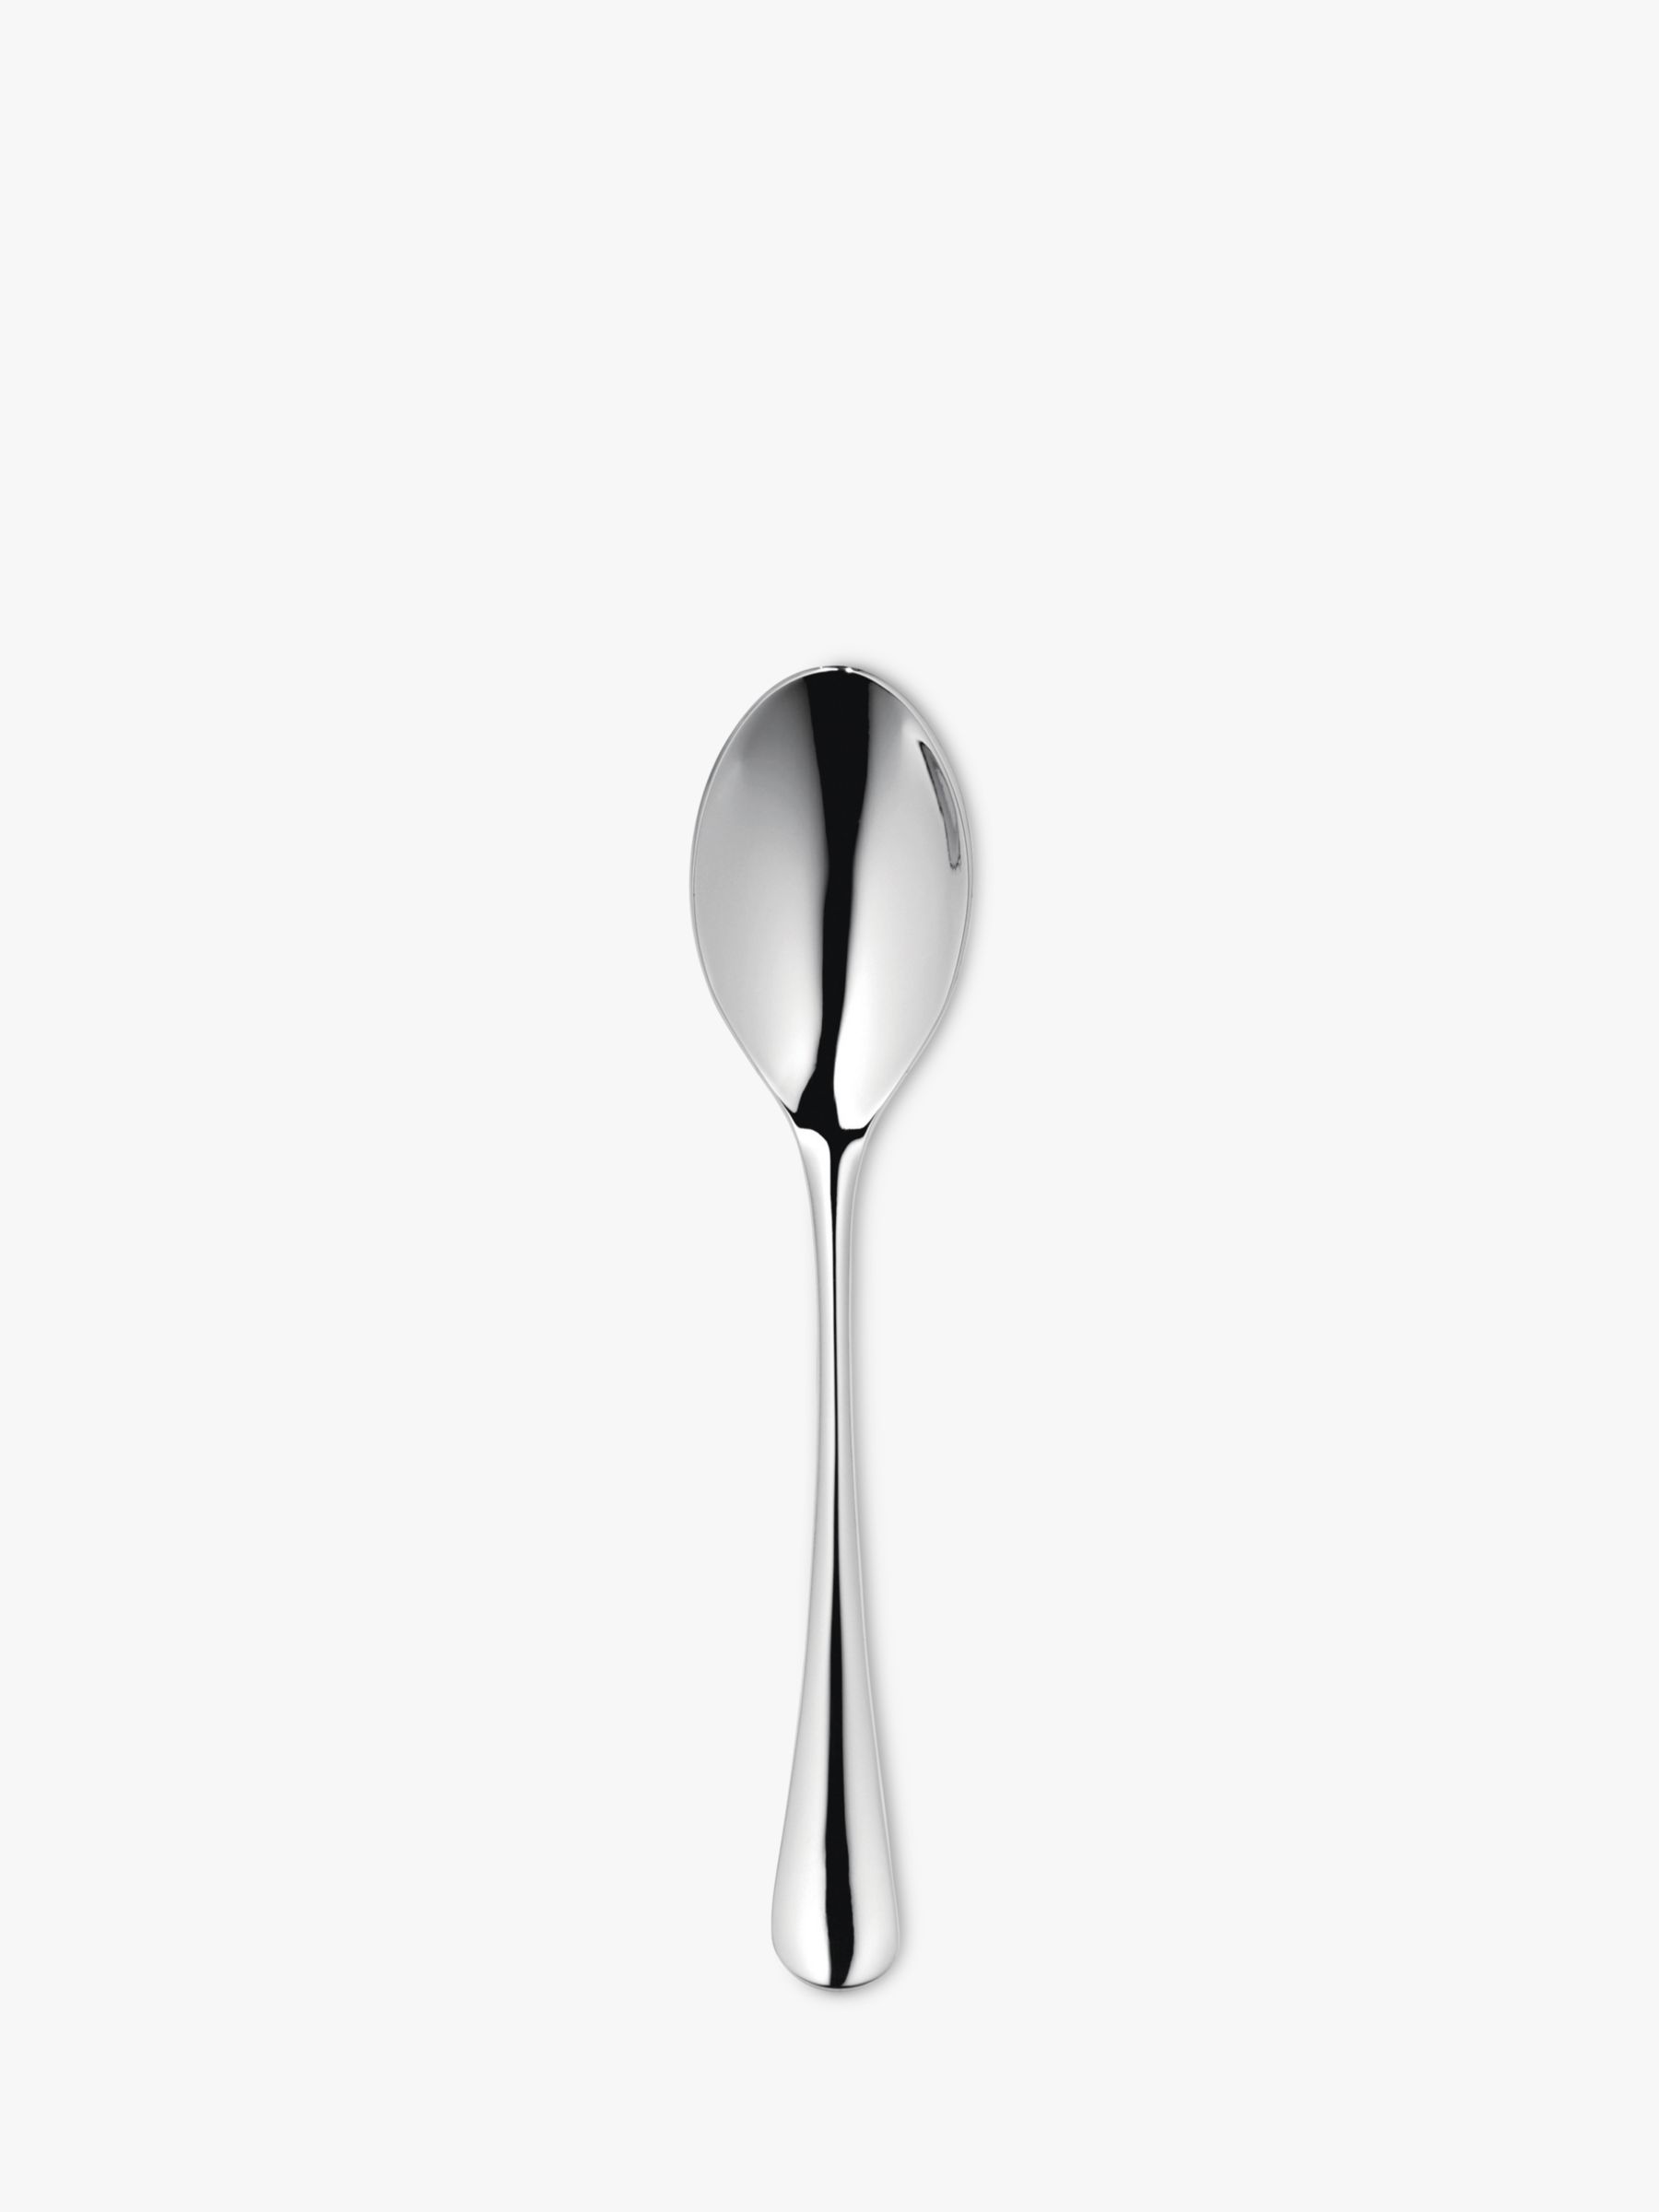 Radford Tea Spoon, Stainless Steel